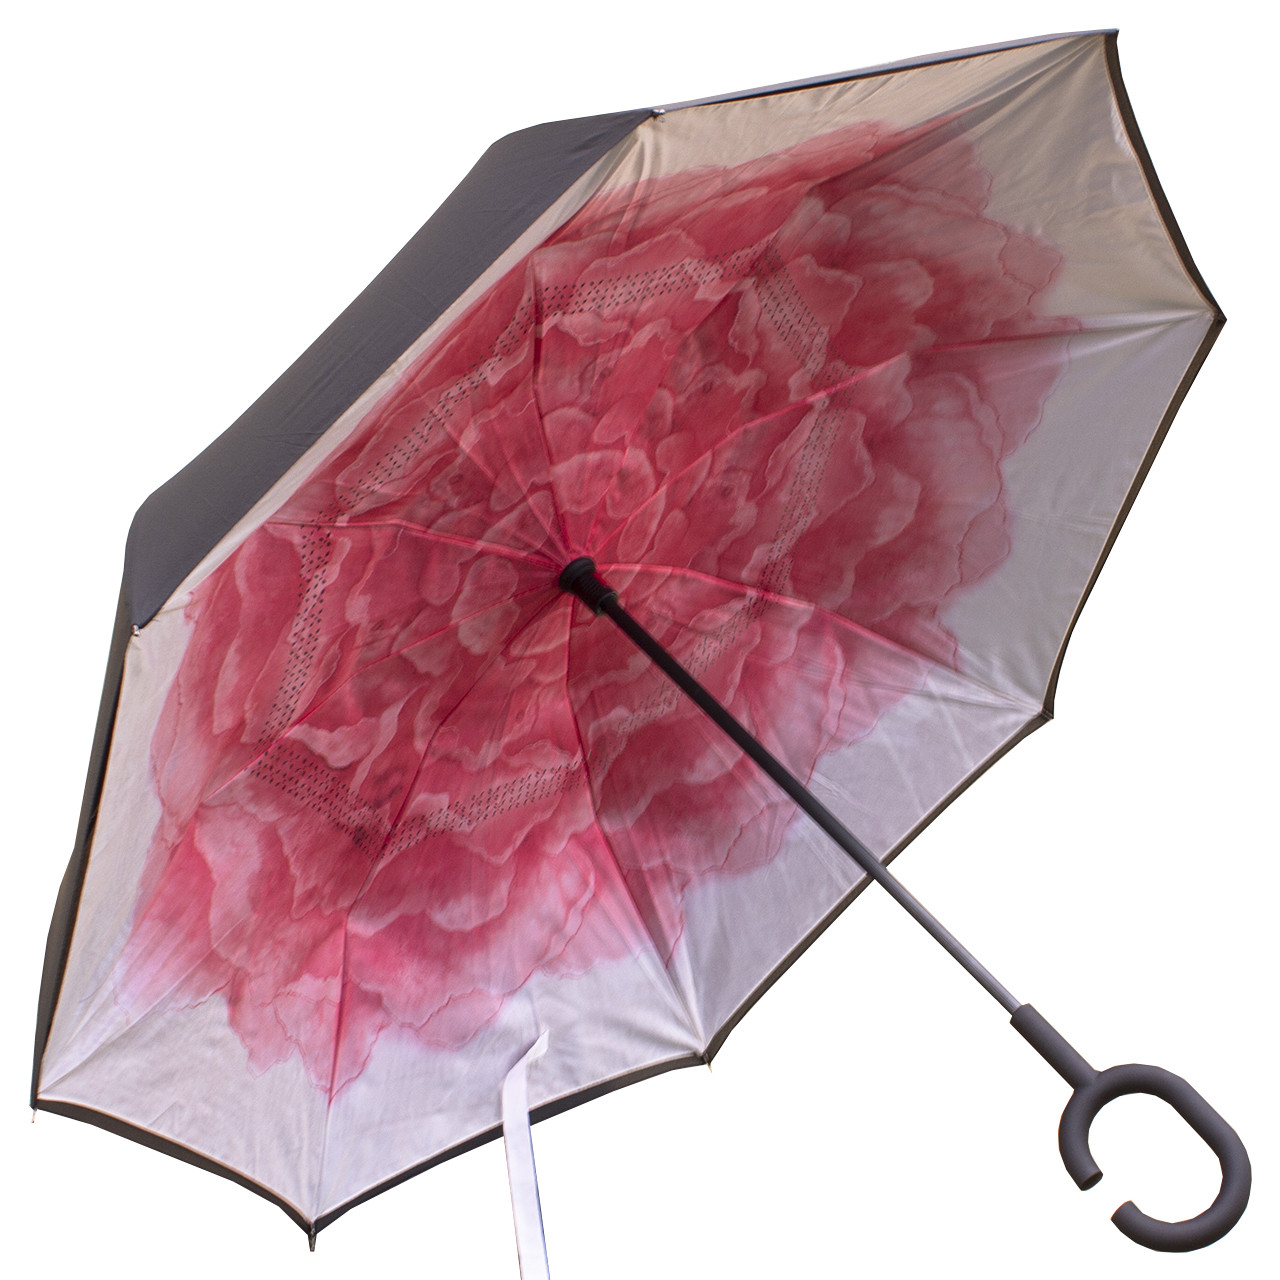 Зонт Up-Brella Роза Розовая тренд сезона двойной купол водоотталкивающая пропитка эргономичная ручка, Черный